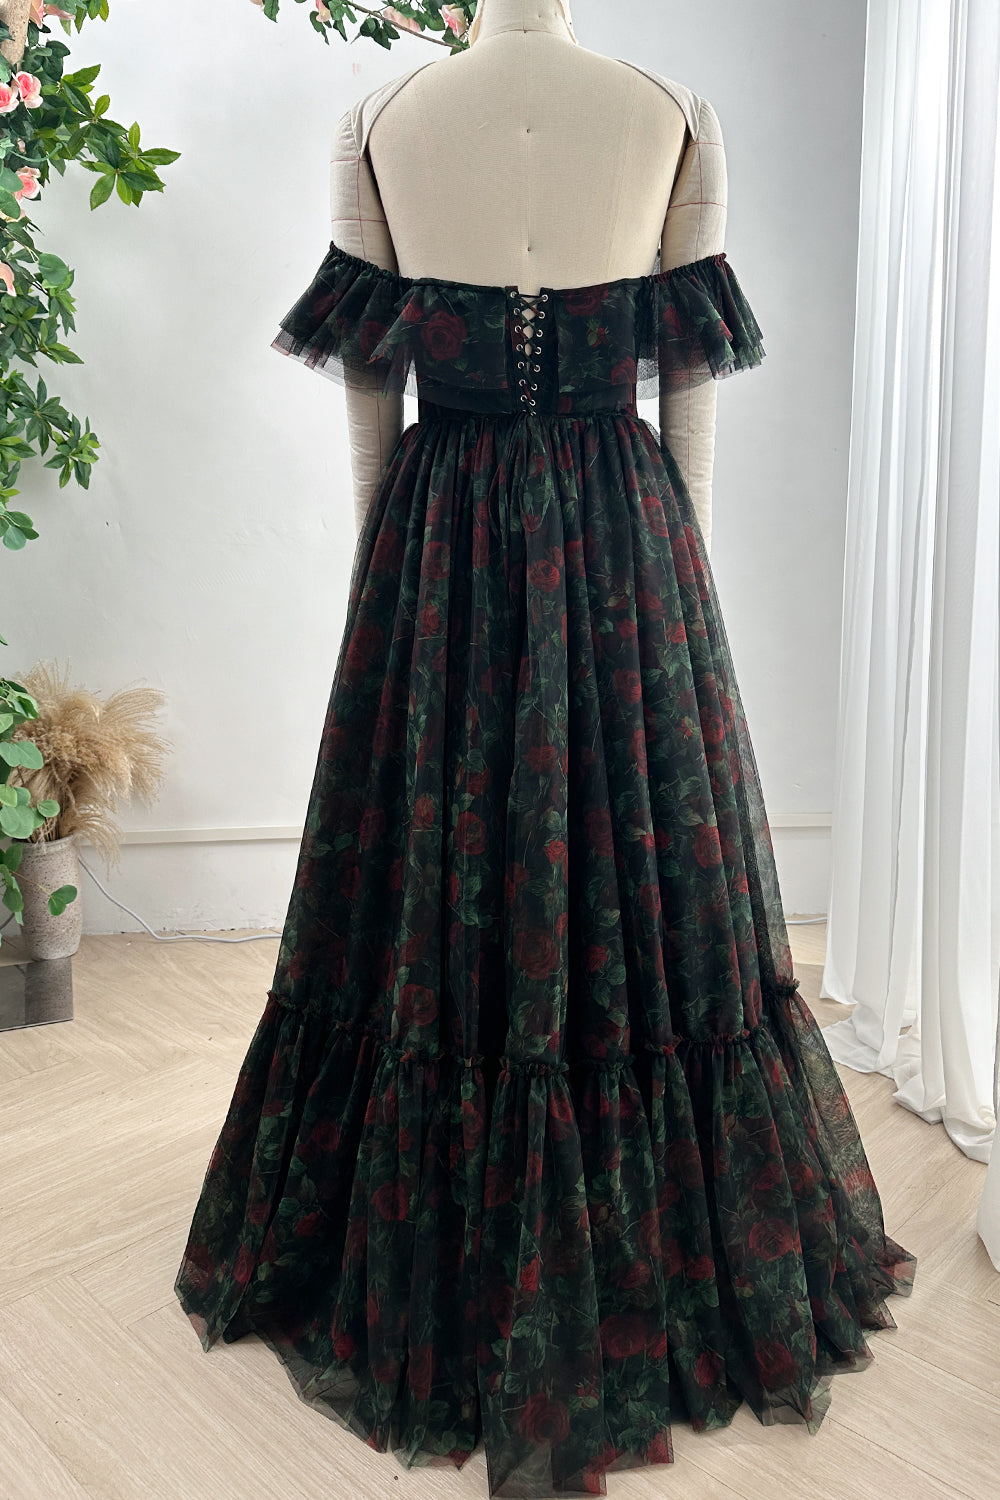 MissJophiel Corset Off the Shoulder Black Floral Print Tiered Dress